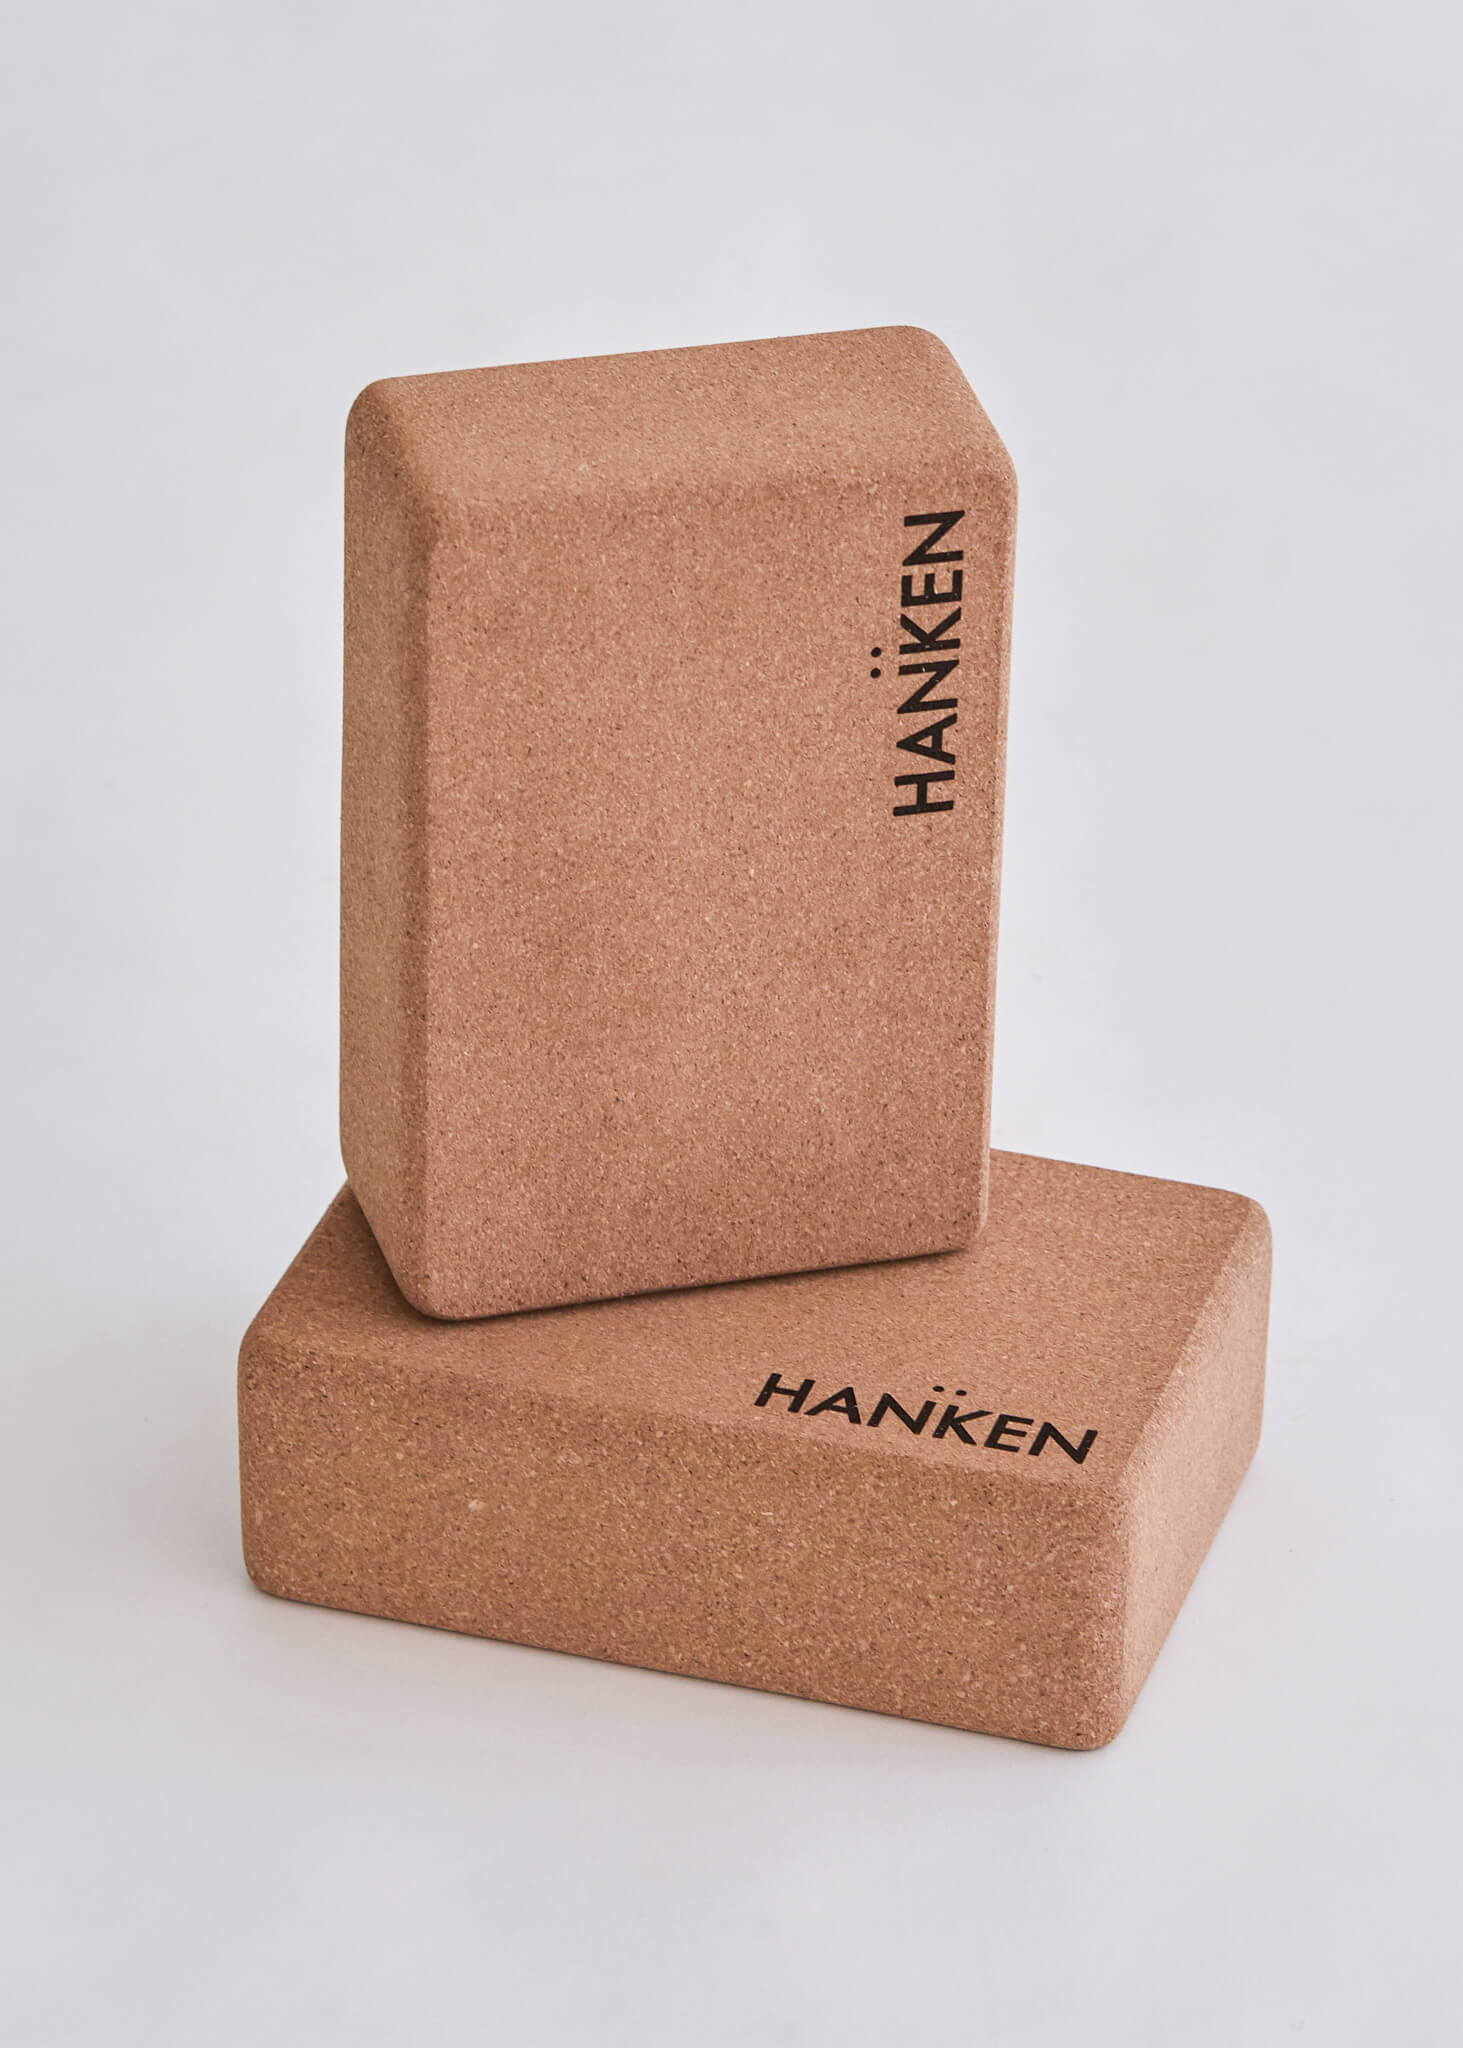 Cork Block – HANKEN